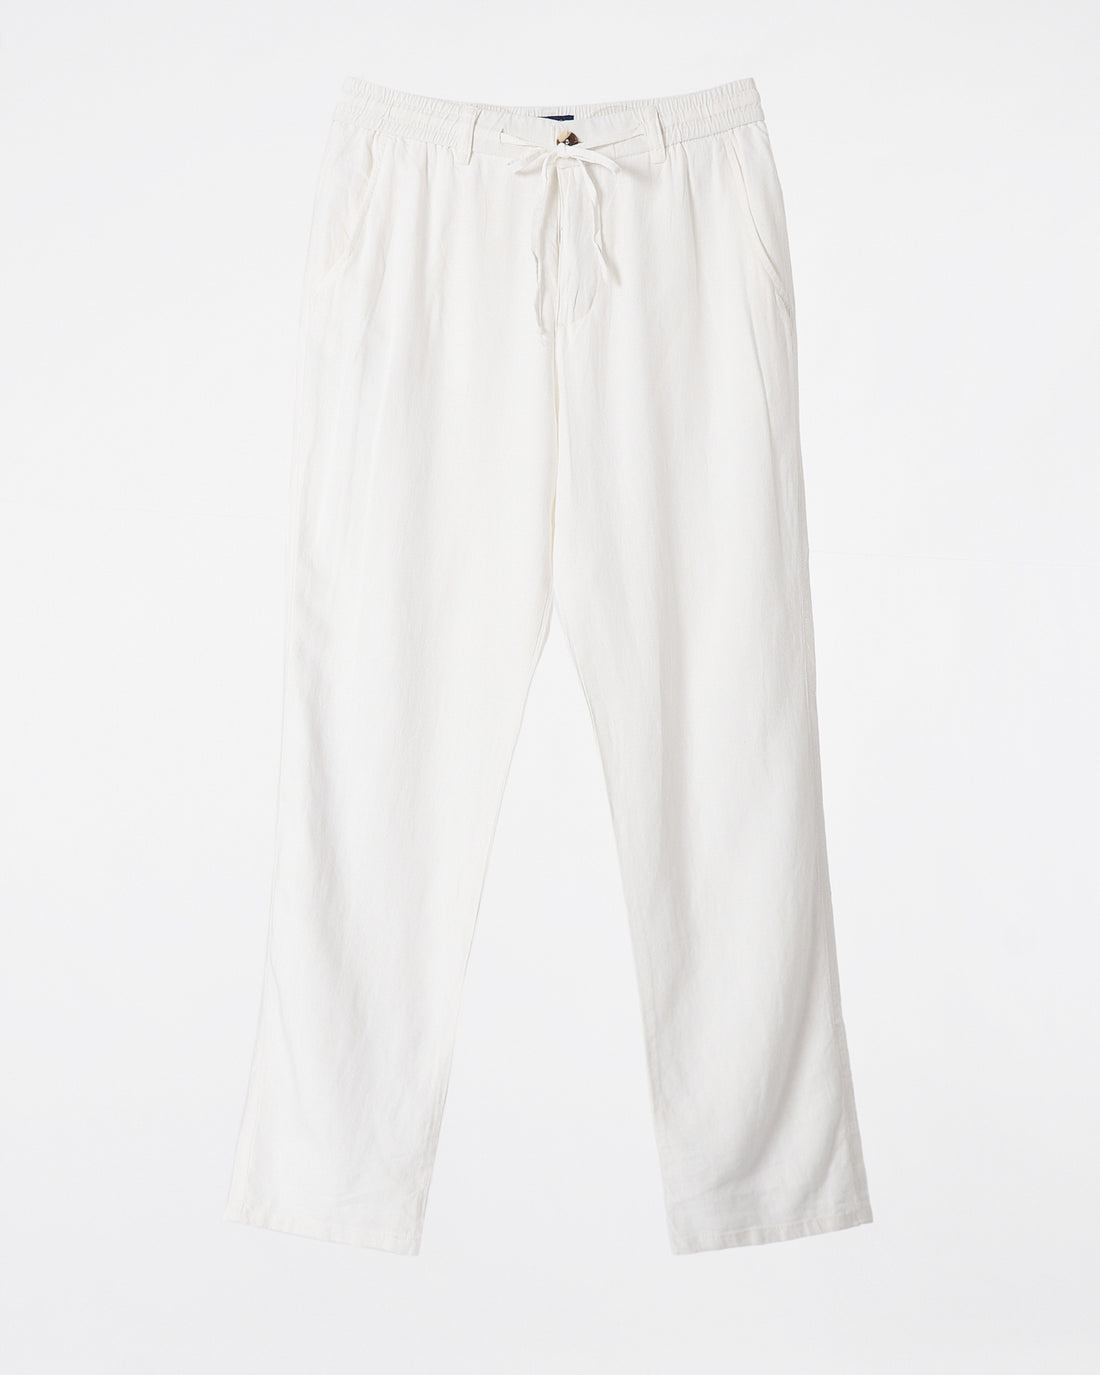 RL Cotton Regular Fit Men White Pants 24.90